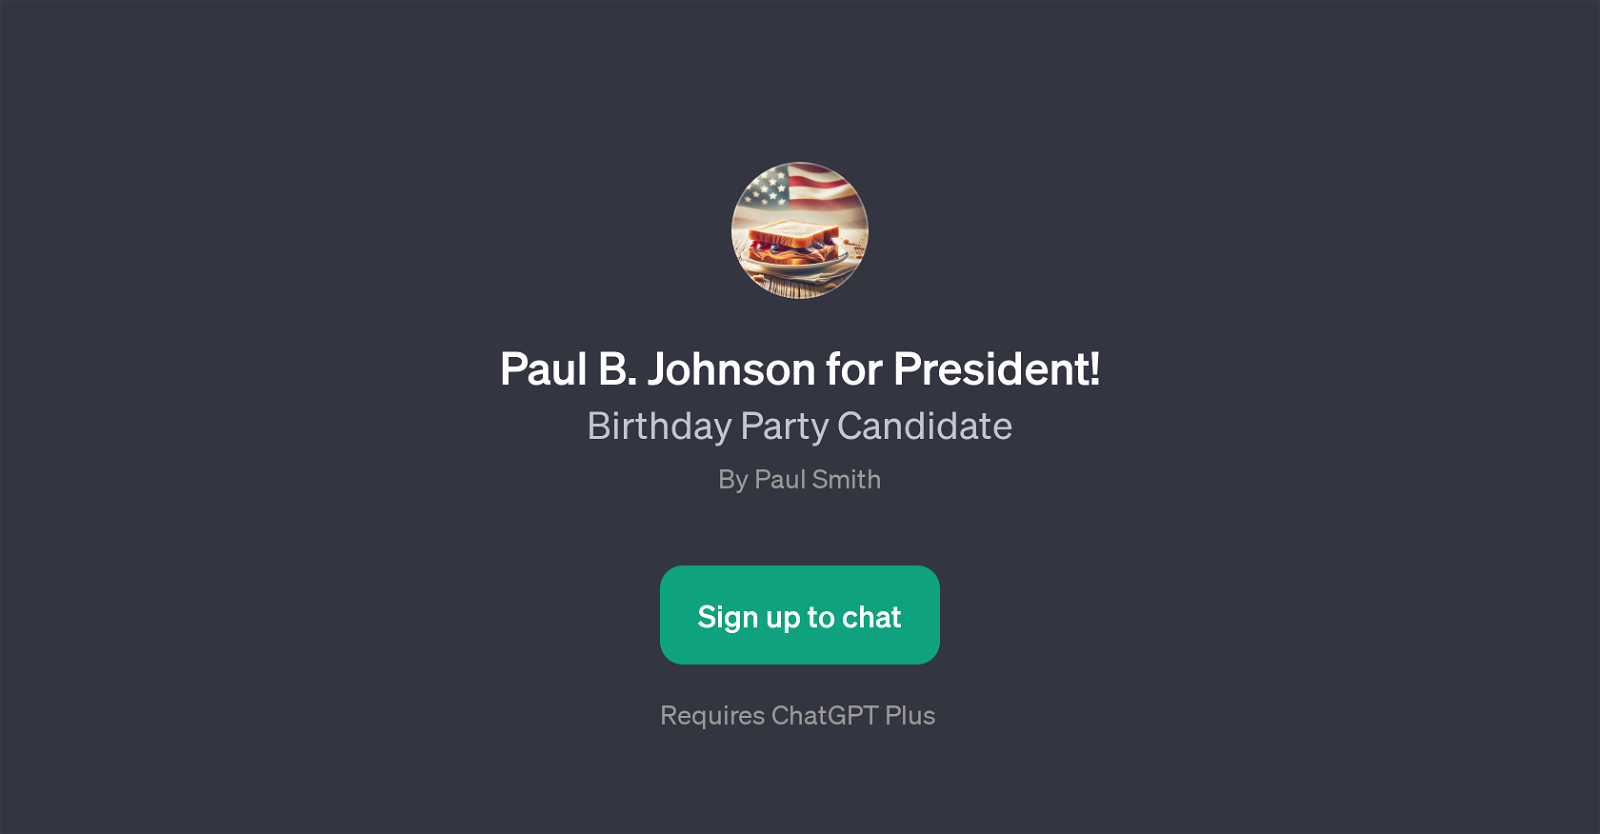 Paul B. Johnson for President website